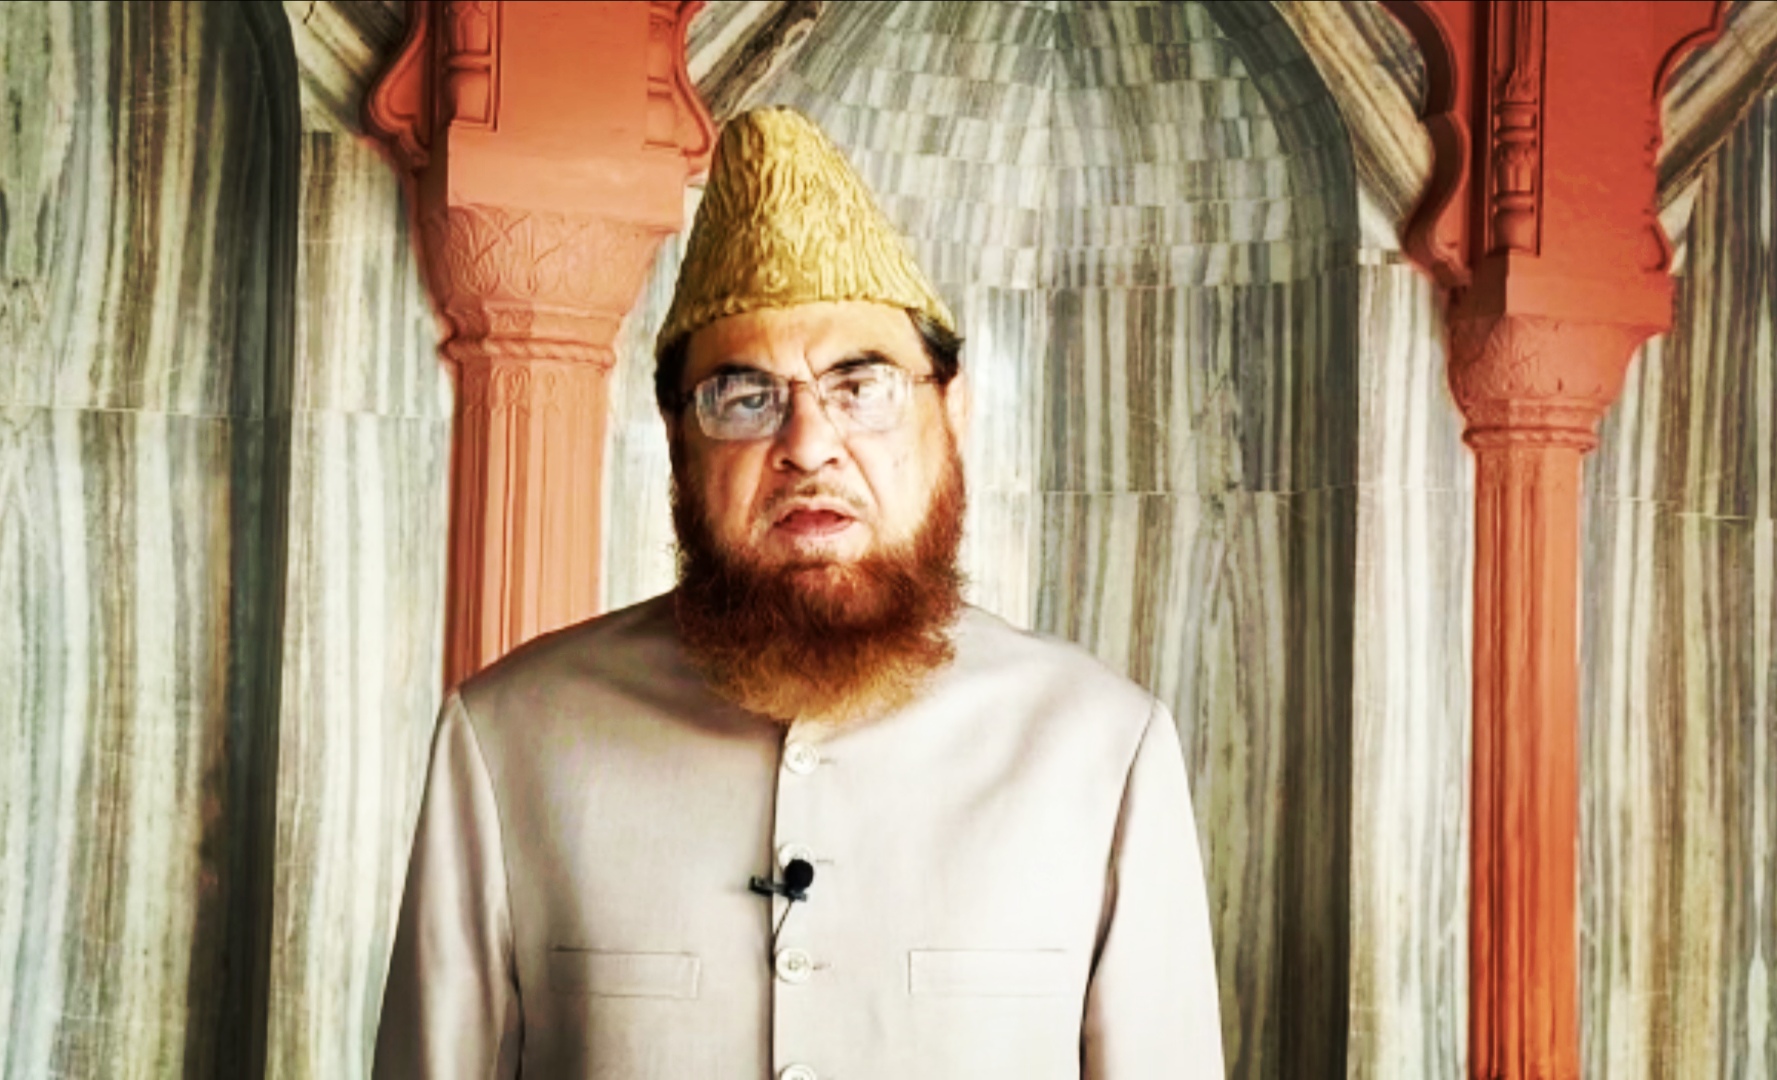 دہلی میں مسجد فتحپوری کے شاہی امام ڈاکٹر مفتی مکرم نے حکومت سے درخواست کی ہے کہ عیدالضحیٰ کے متعلق تمام انتظامات کیے جائیں